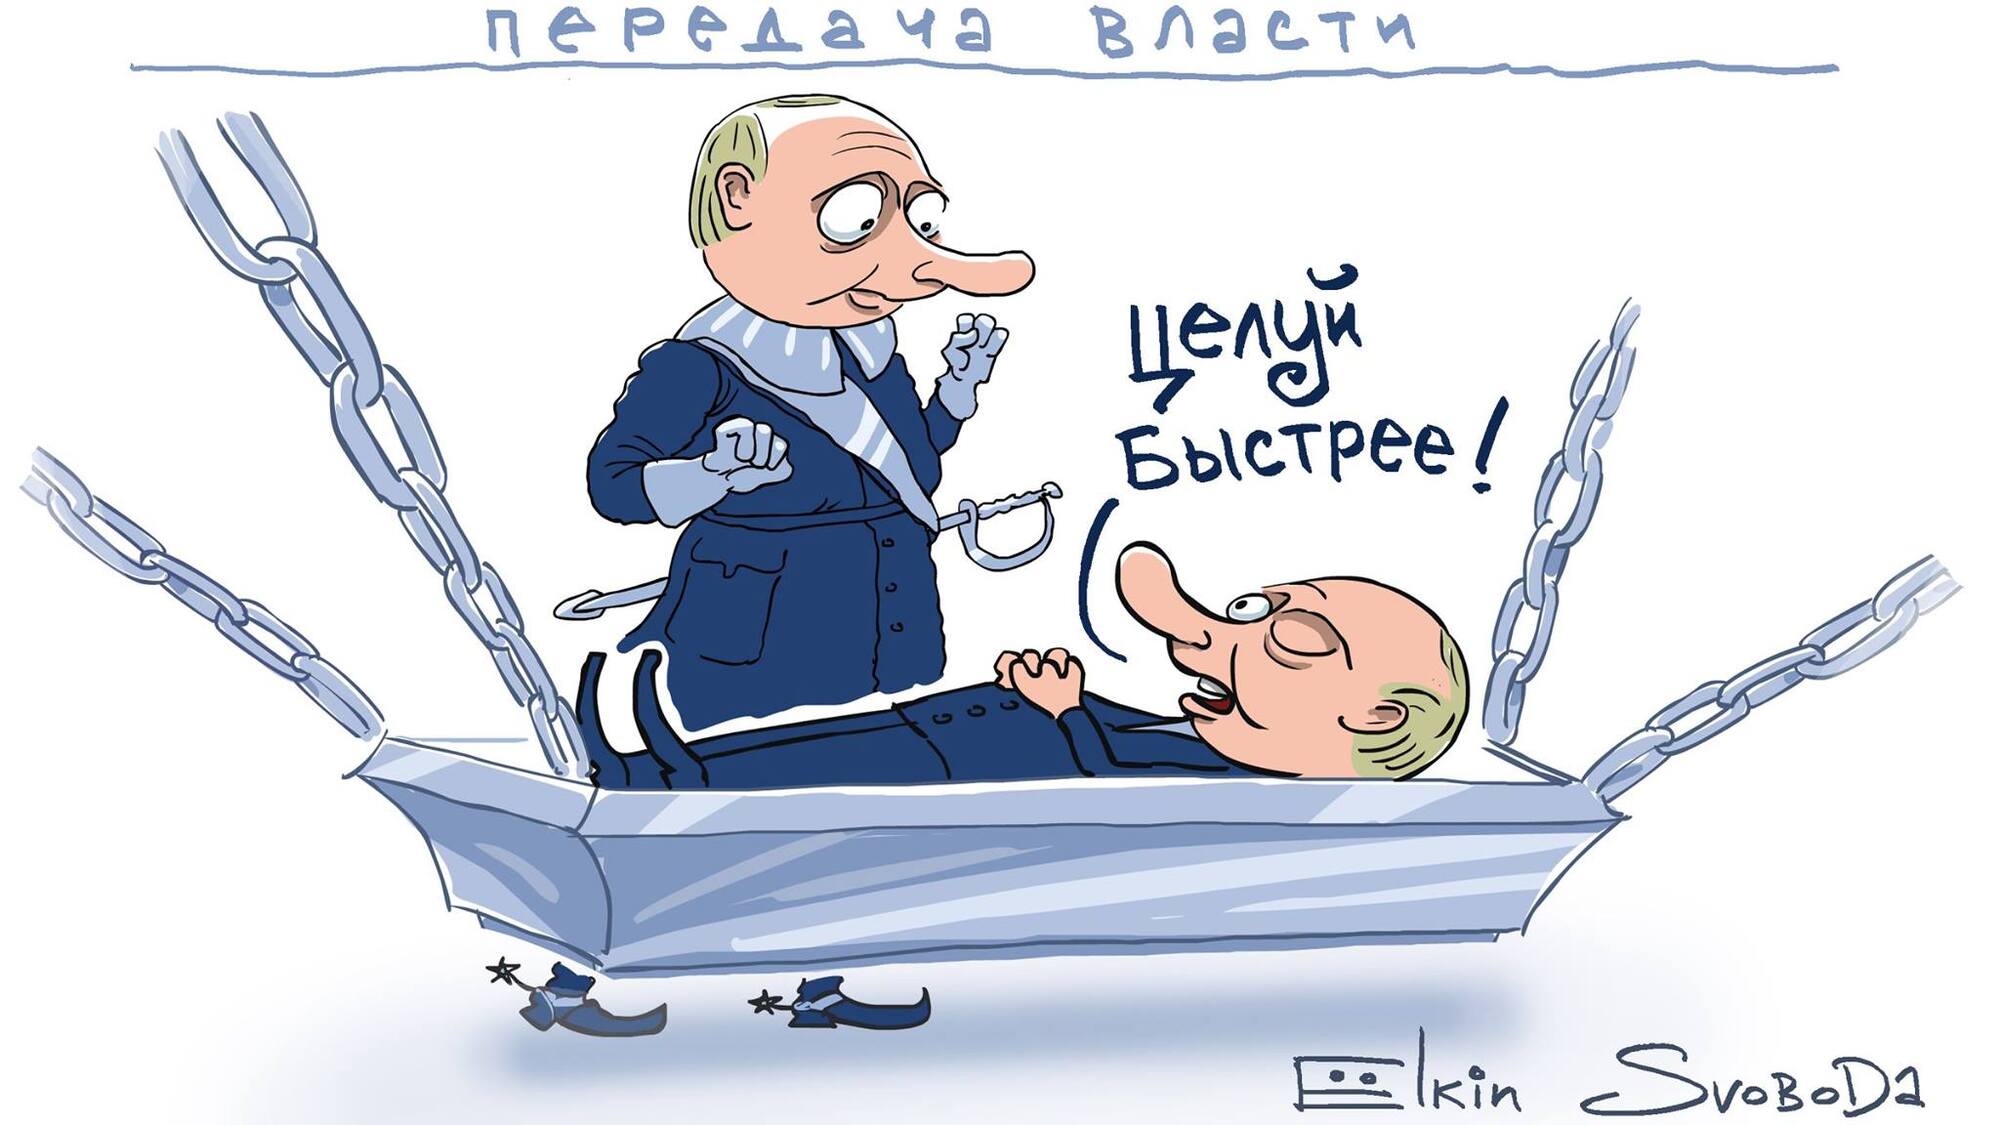 "Путин в гробу": известный карикатурист высмеял выдвижение президента России